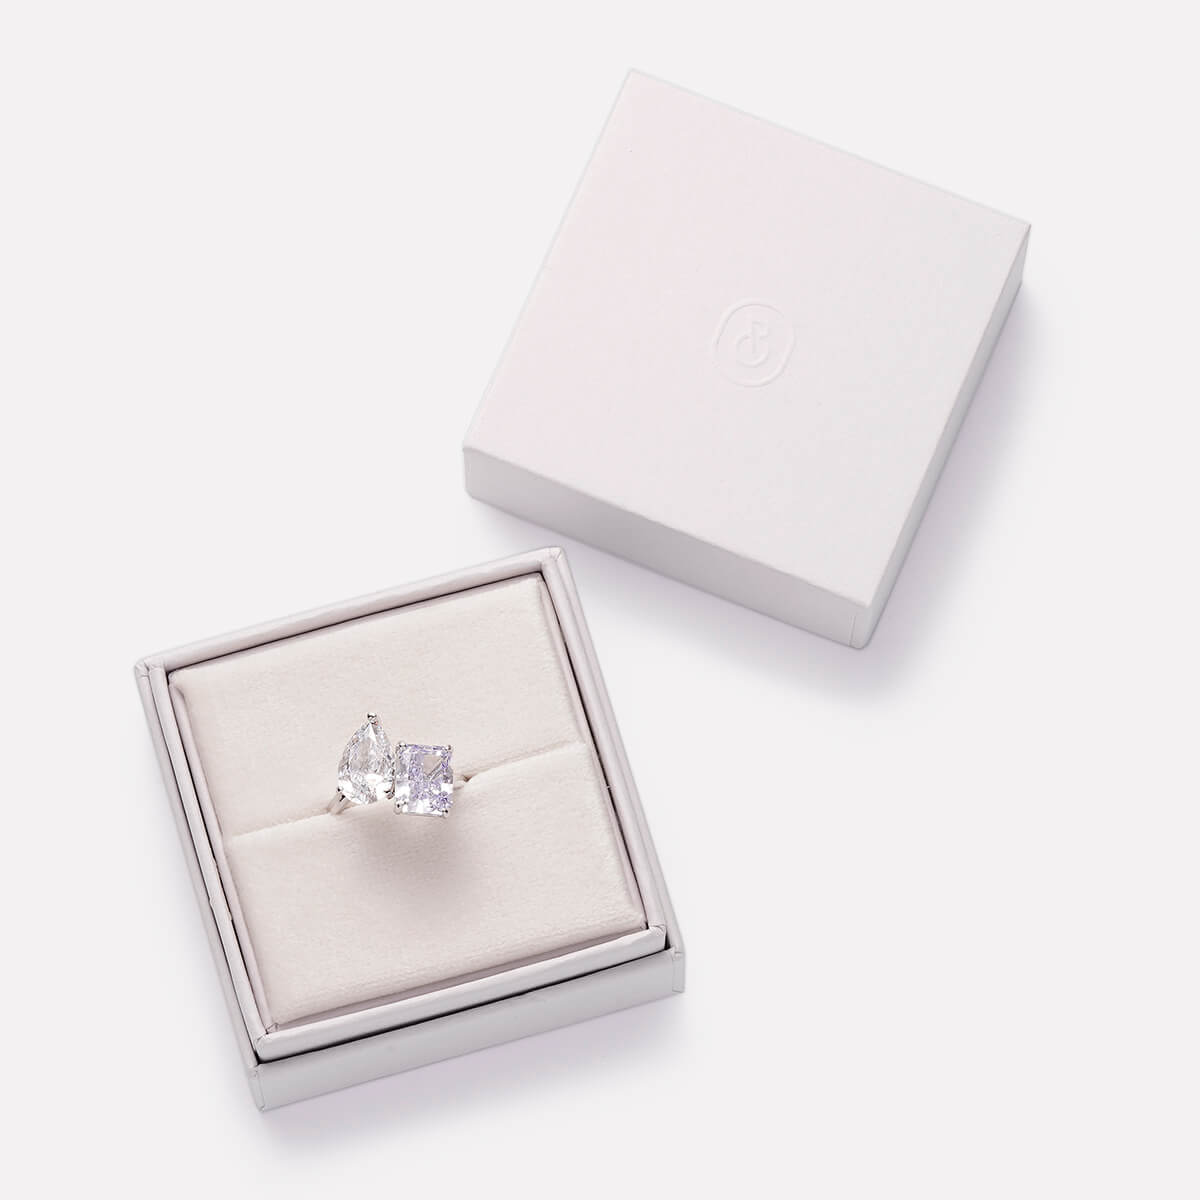 Premium Ring Box - Single